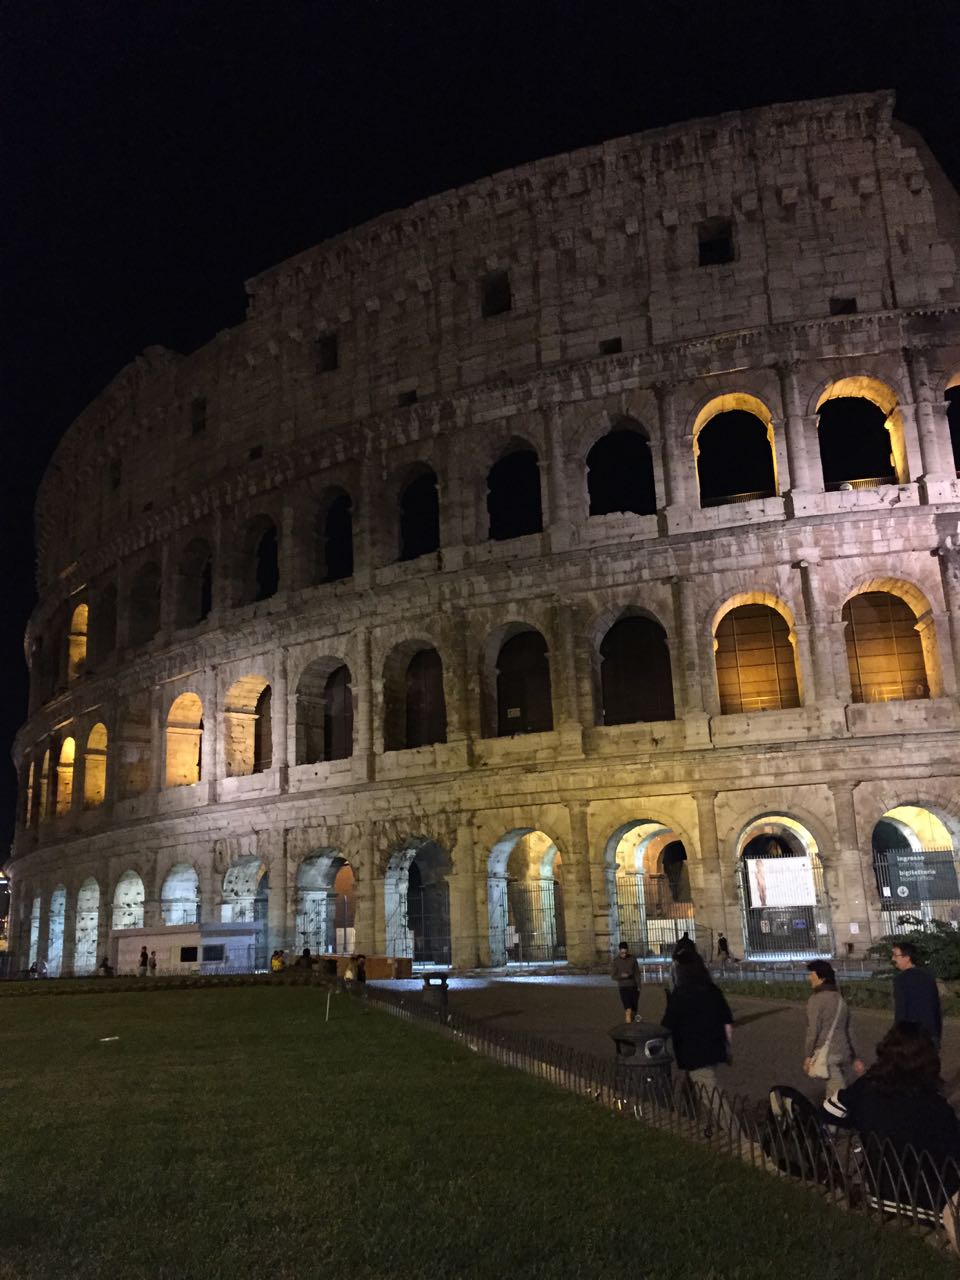 1FTtravel Rome - Colosseo Celio - Lazio, May 19, 2015 - 1 of 4